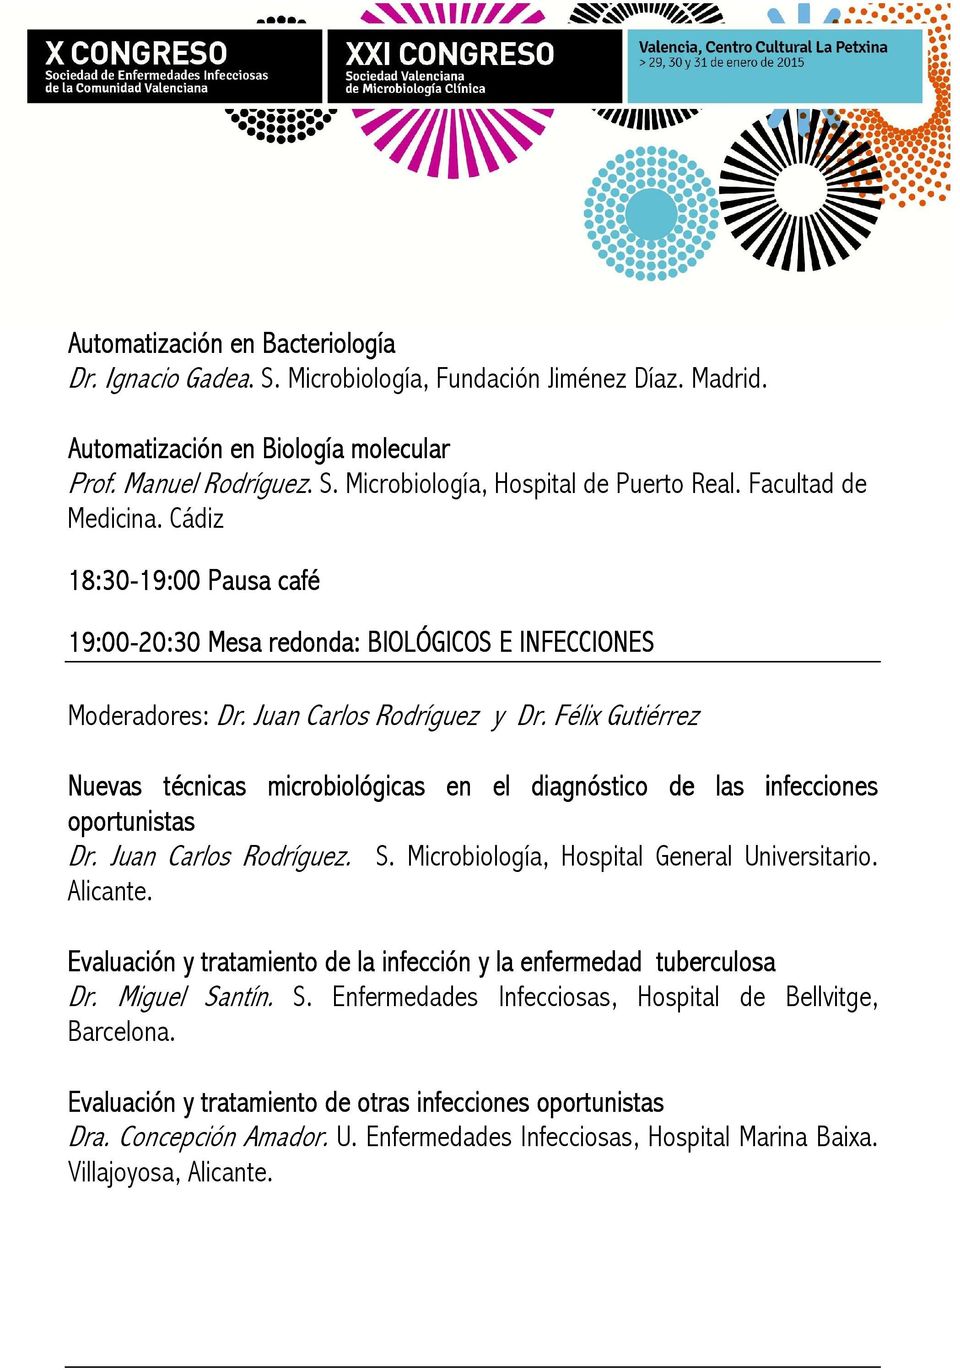 Félix Gutiérrez Nuevas técnicas microbiológicas en el diagnóstico de las infecciones oportunistas Dr. Juan Carlos Rodríguez. S. Microbiología, Hospital General Universitario. Alicante.